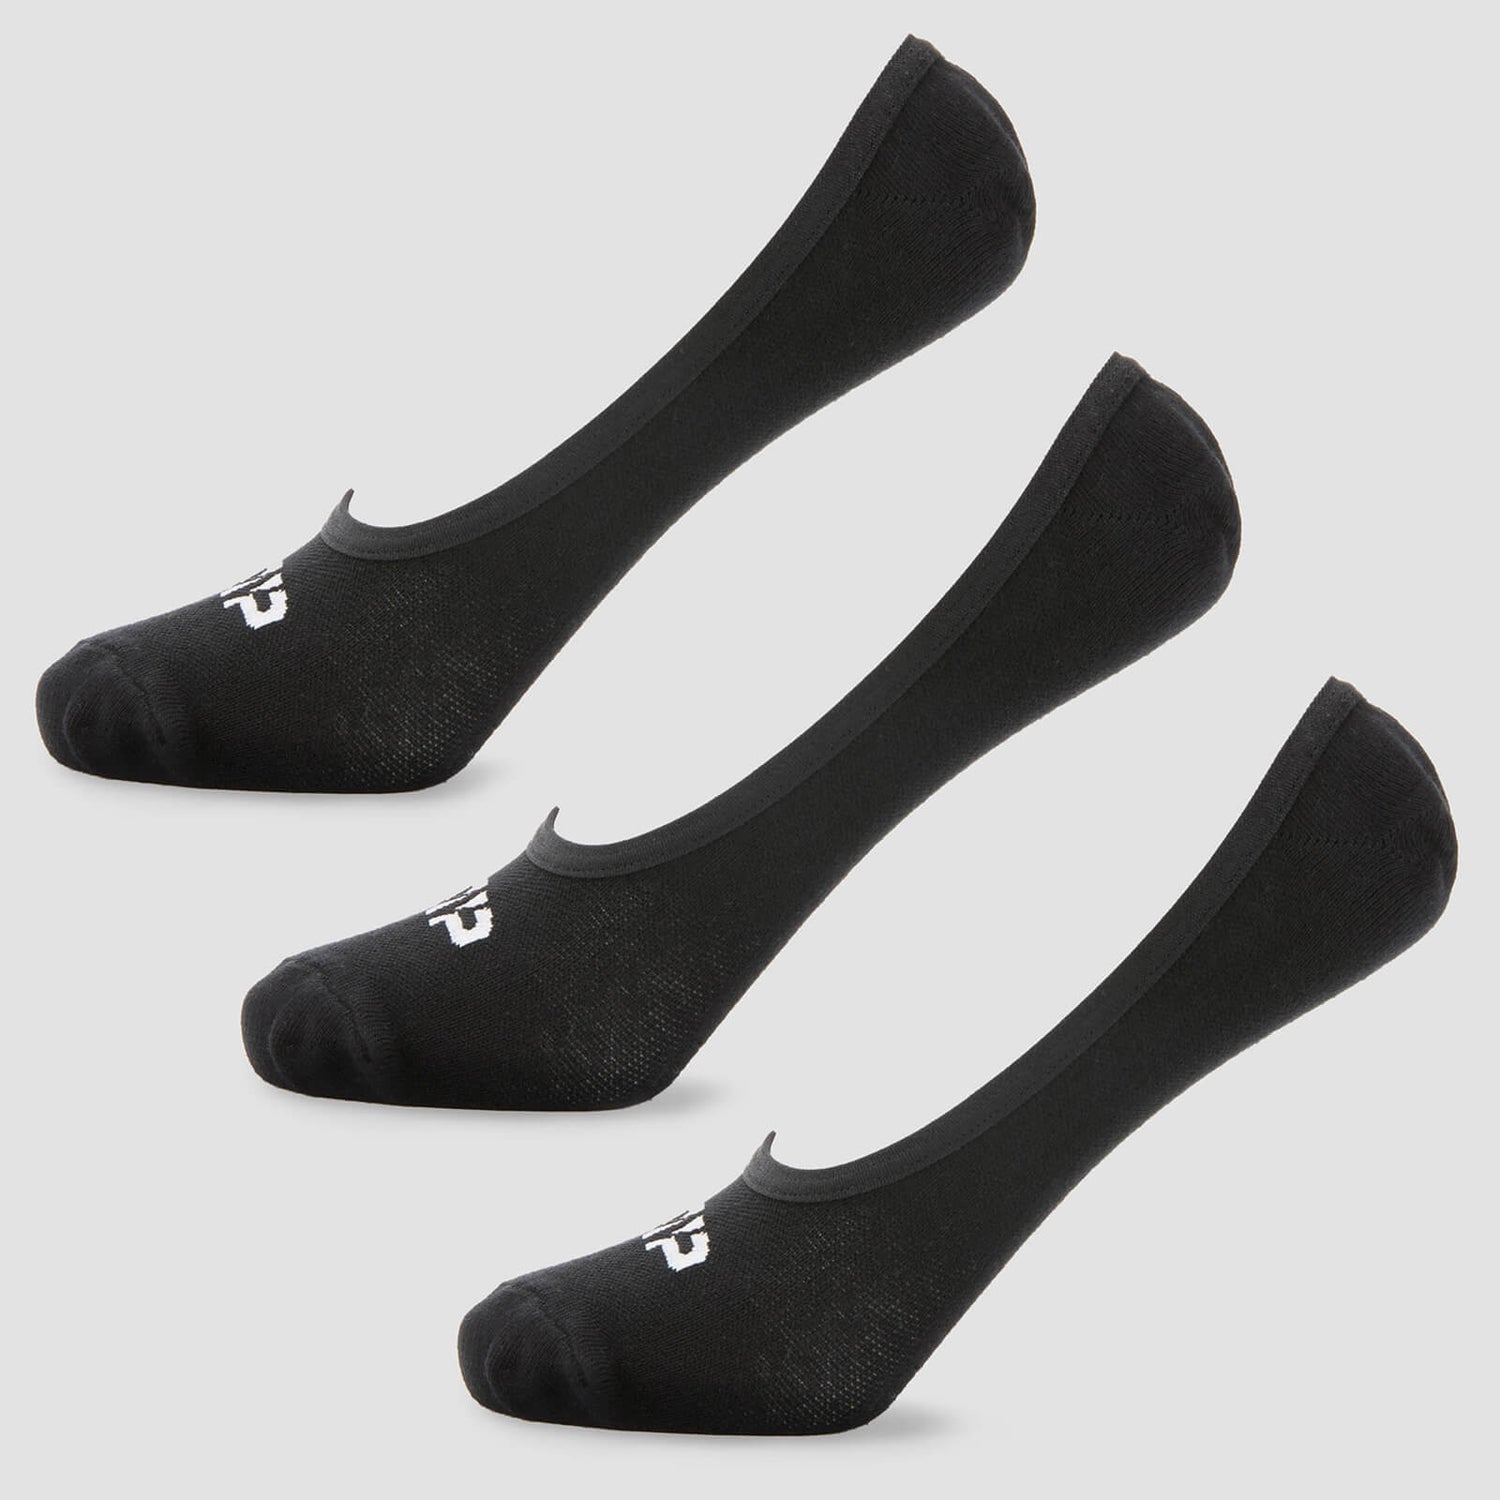 Αντρικές Αόρατες Κάλτσες - Μαύρες - UK 6-8